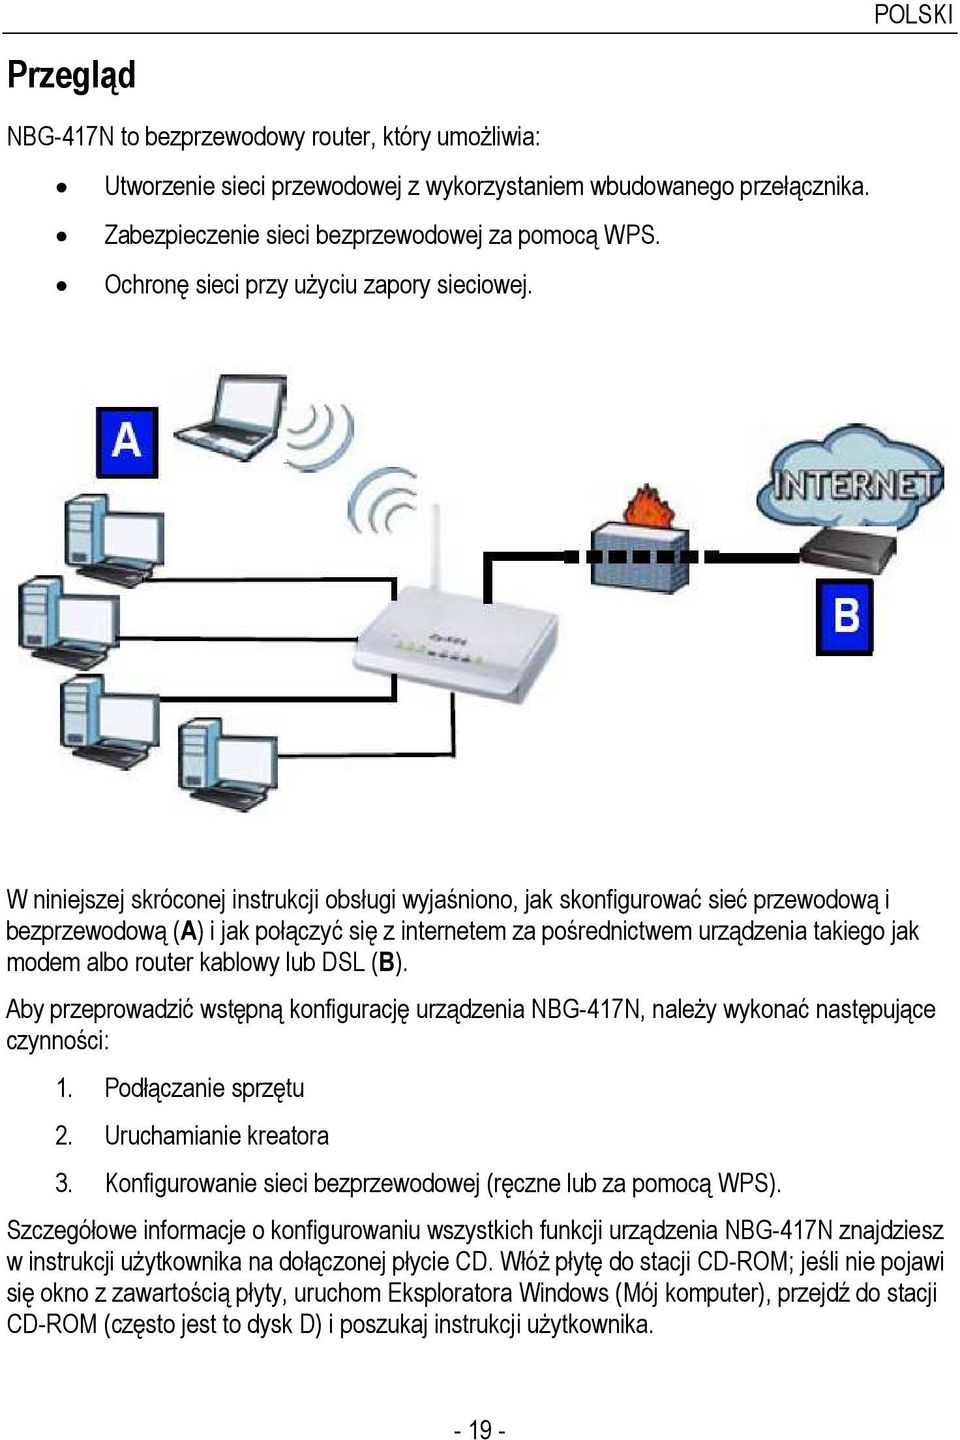 W niniejszej skróconej instrukcji obsługi wyjaśniono, jak skonfigurować sieć przewodową i bezprzewodową (A) i jak połączyć się z internetem za pośrednictwem urządzenia takiego jak modem albo router